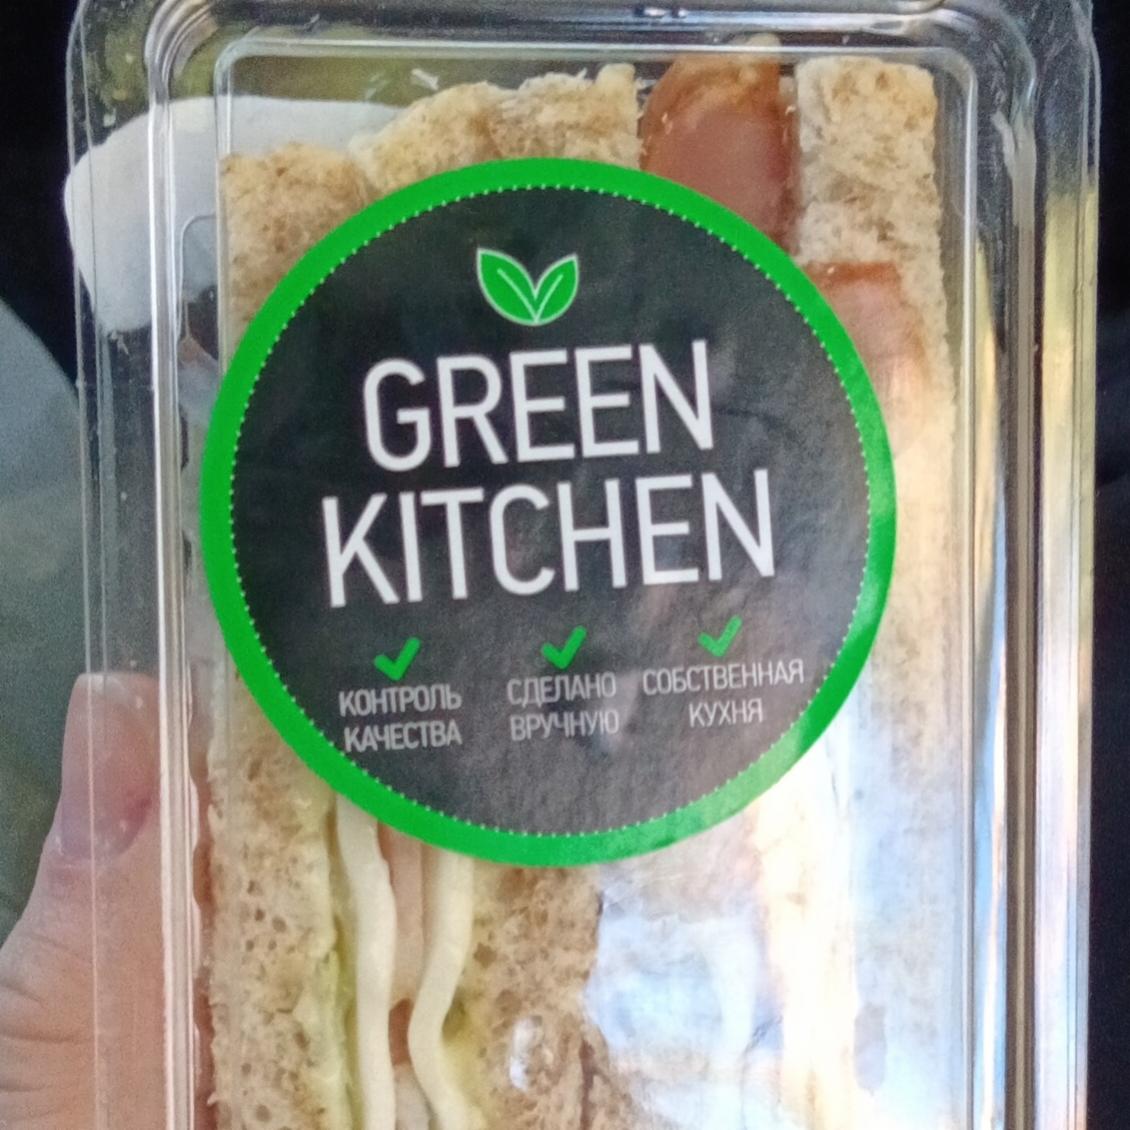 Фото - Сэндвич с грудинкой Green Kitchen